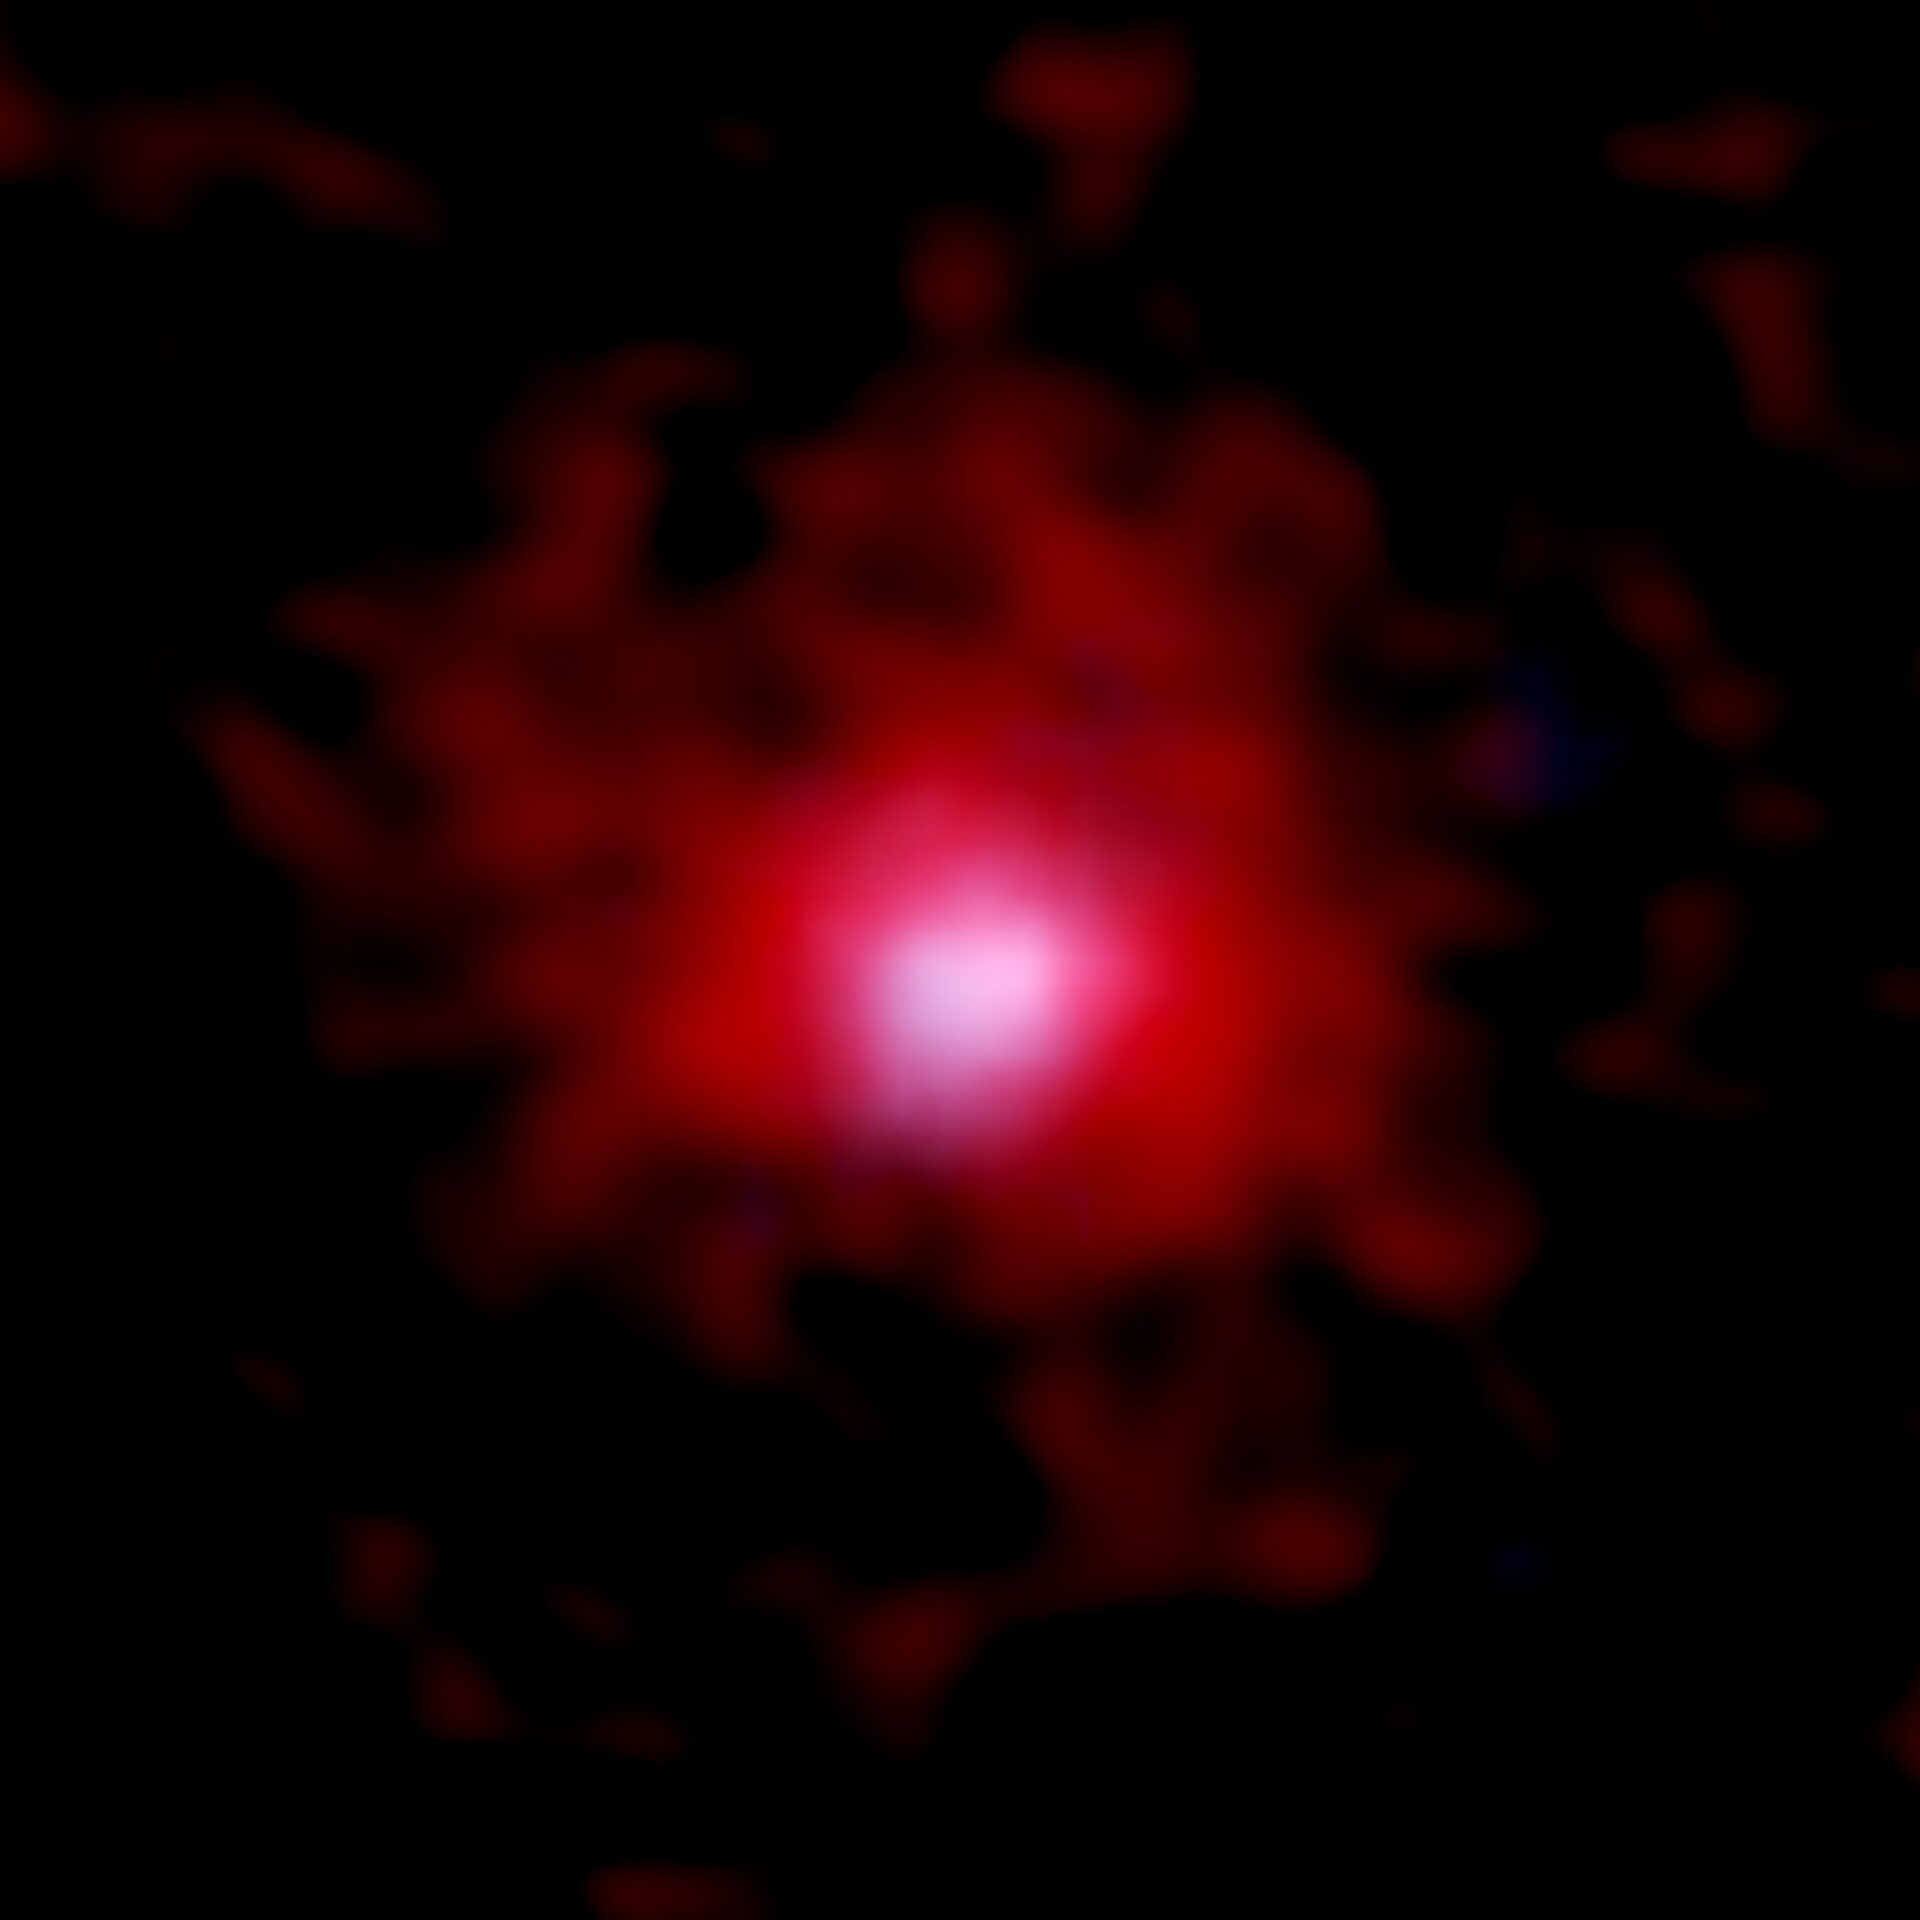 <p>Imagen de una joven galaxia rodeada de una bolsa de carbono gaseoso generada por ALMA y el telescopio espacial Hubble de la NASA/ESA (HST). En rojo se aprecia la distribución del gas de carbono representada a partir de los datos de 18 galaxias obtenidos con ALMA. La distribución estelar fotografiada por el HST se muestra en azul. El tamaño de la imagen es de 3,8 x 3,8 arcosegundos, lo que corresponde a 70.000 x 70.000 años luz, a 12.800 millones de años luz de distancia. Créditos: ALMA (ESO/NAOJ/NRAO), telescopio espacial Hubble de la NASA/ESA, Fujimoto et al.</p>
